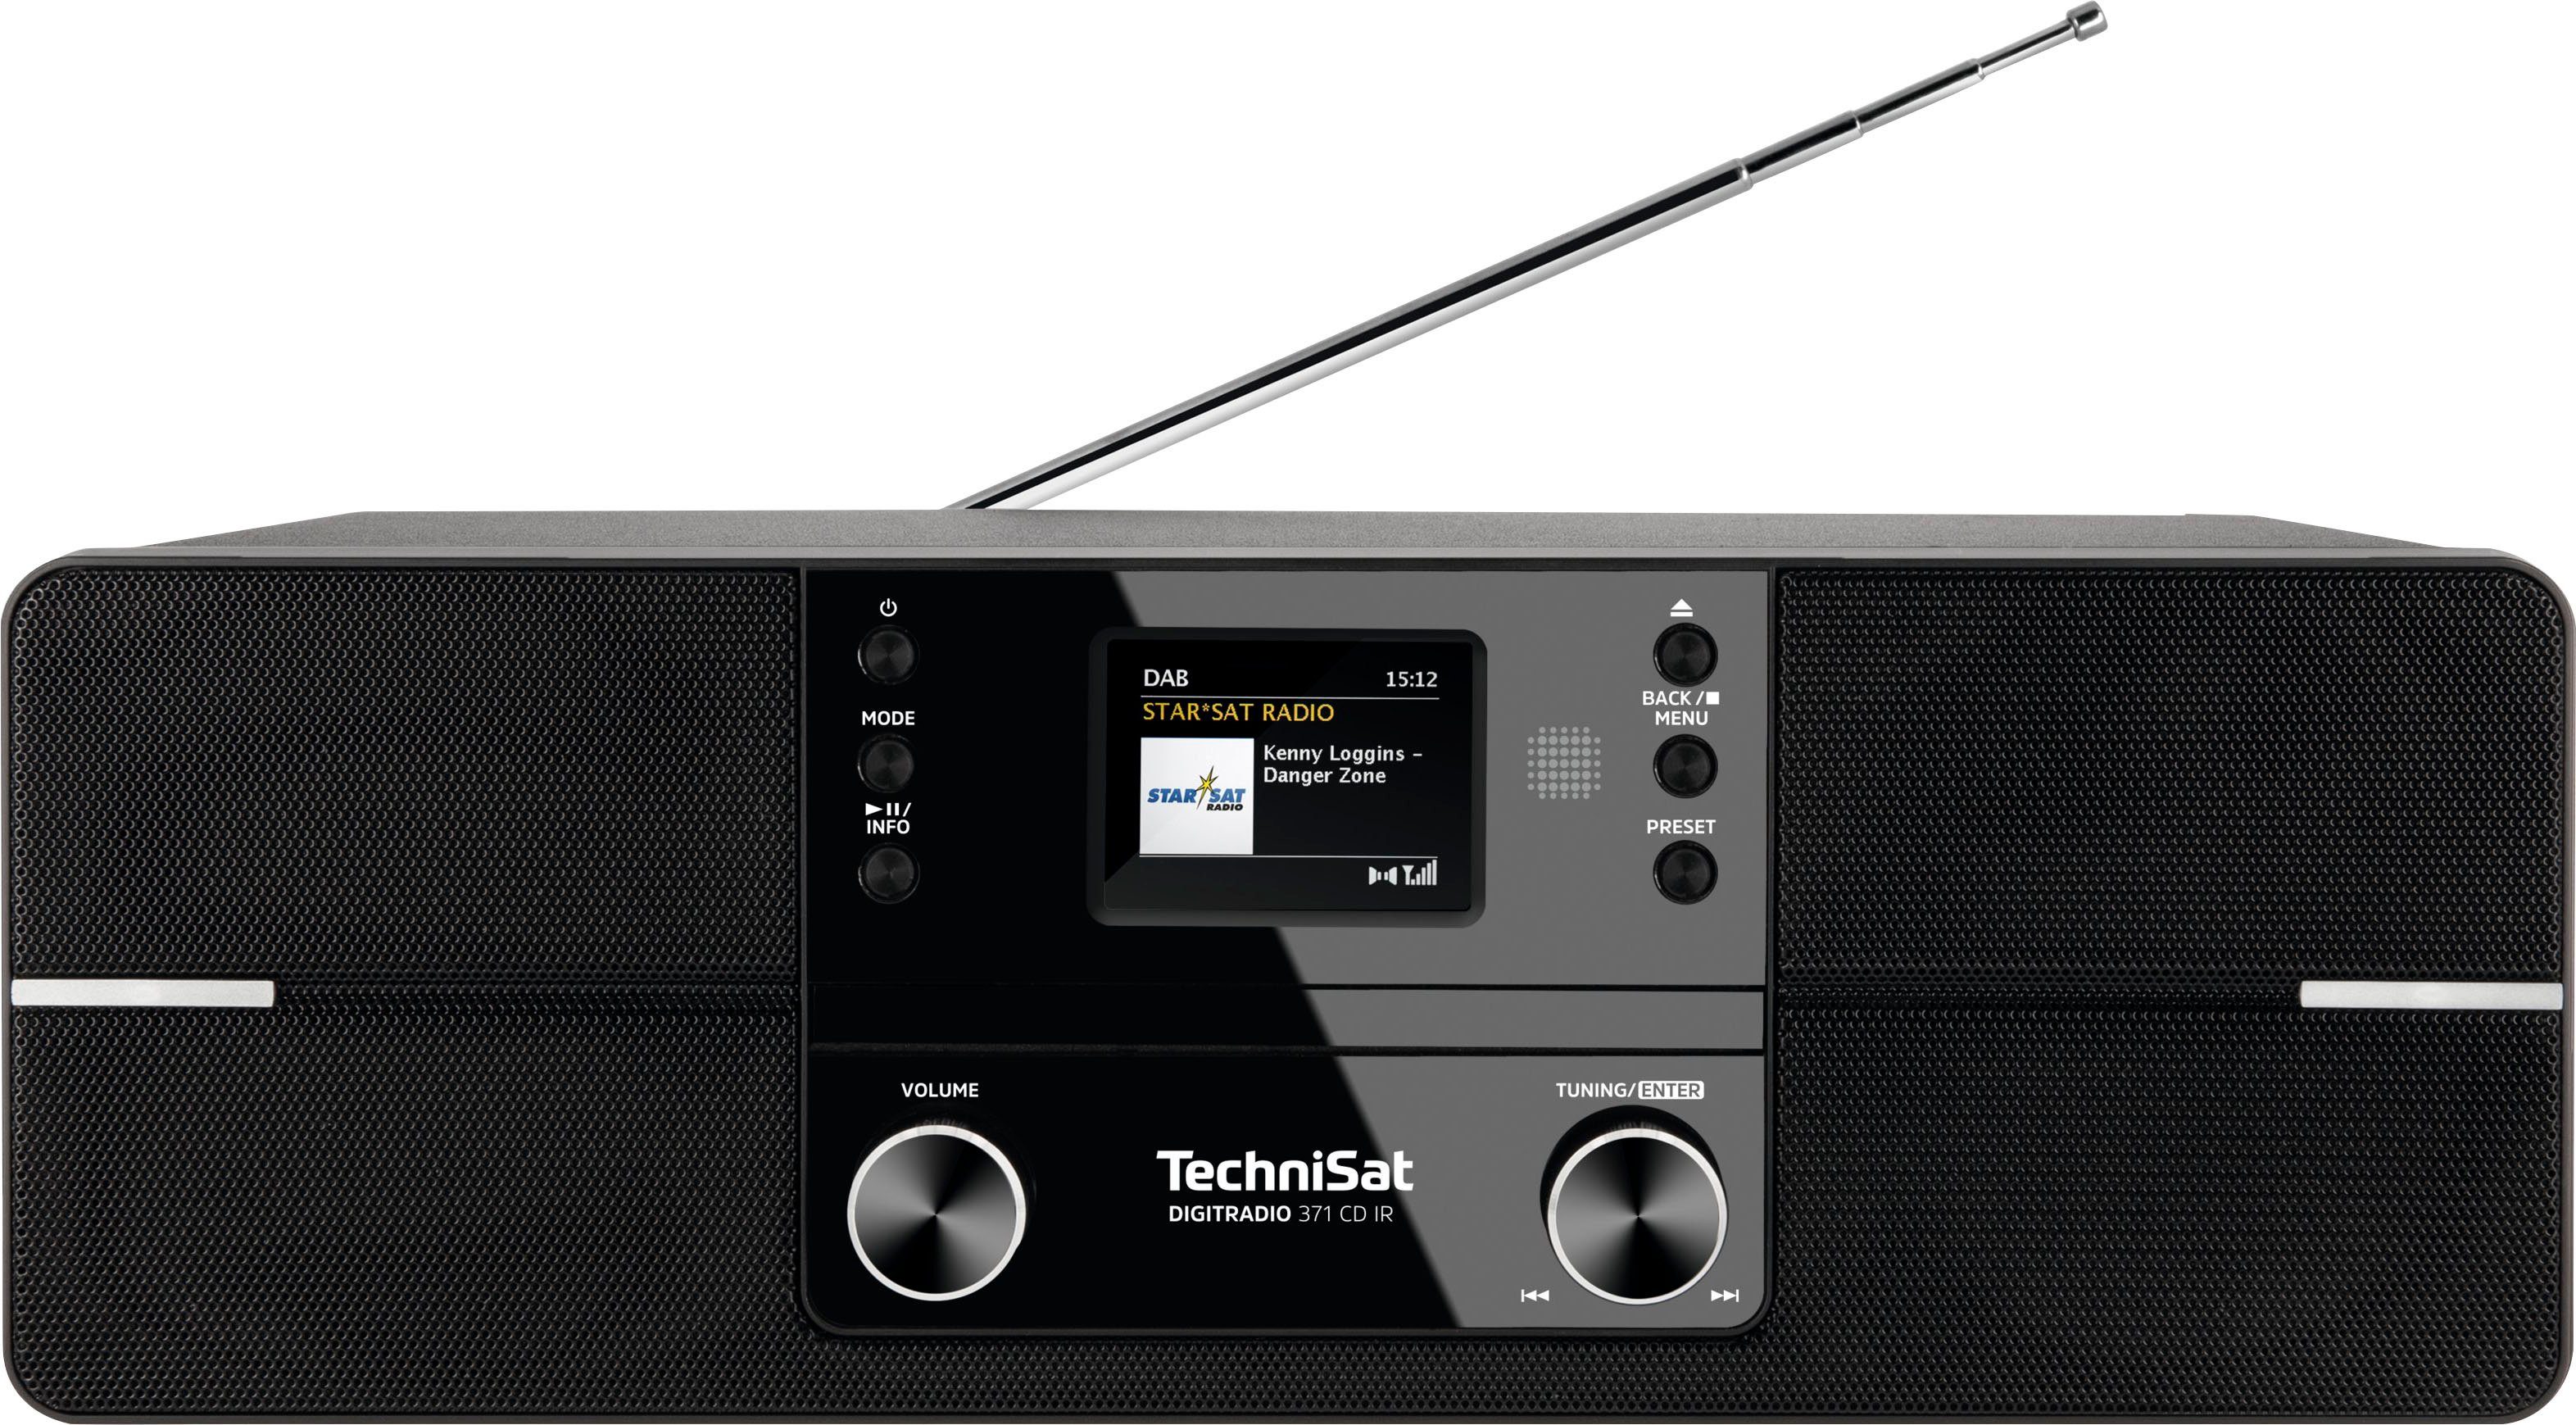 TechniSat Internetradio 371 cd IR stereo met dab+, cd, bluetooth, kleurendisplay, usb in de online winkel |